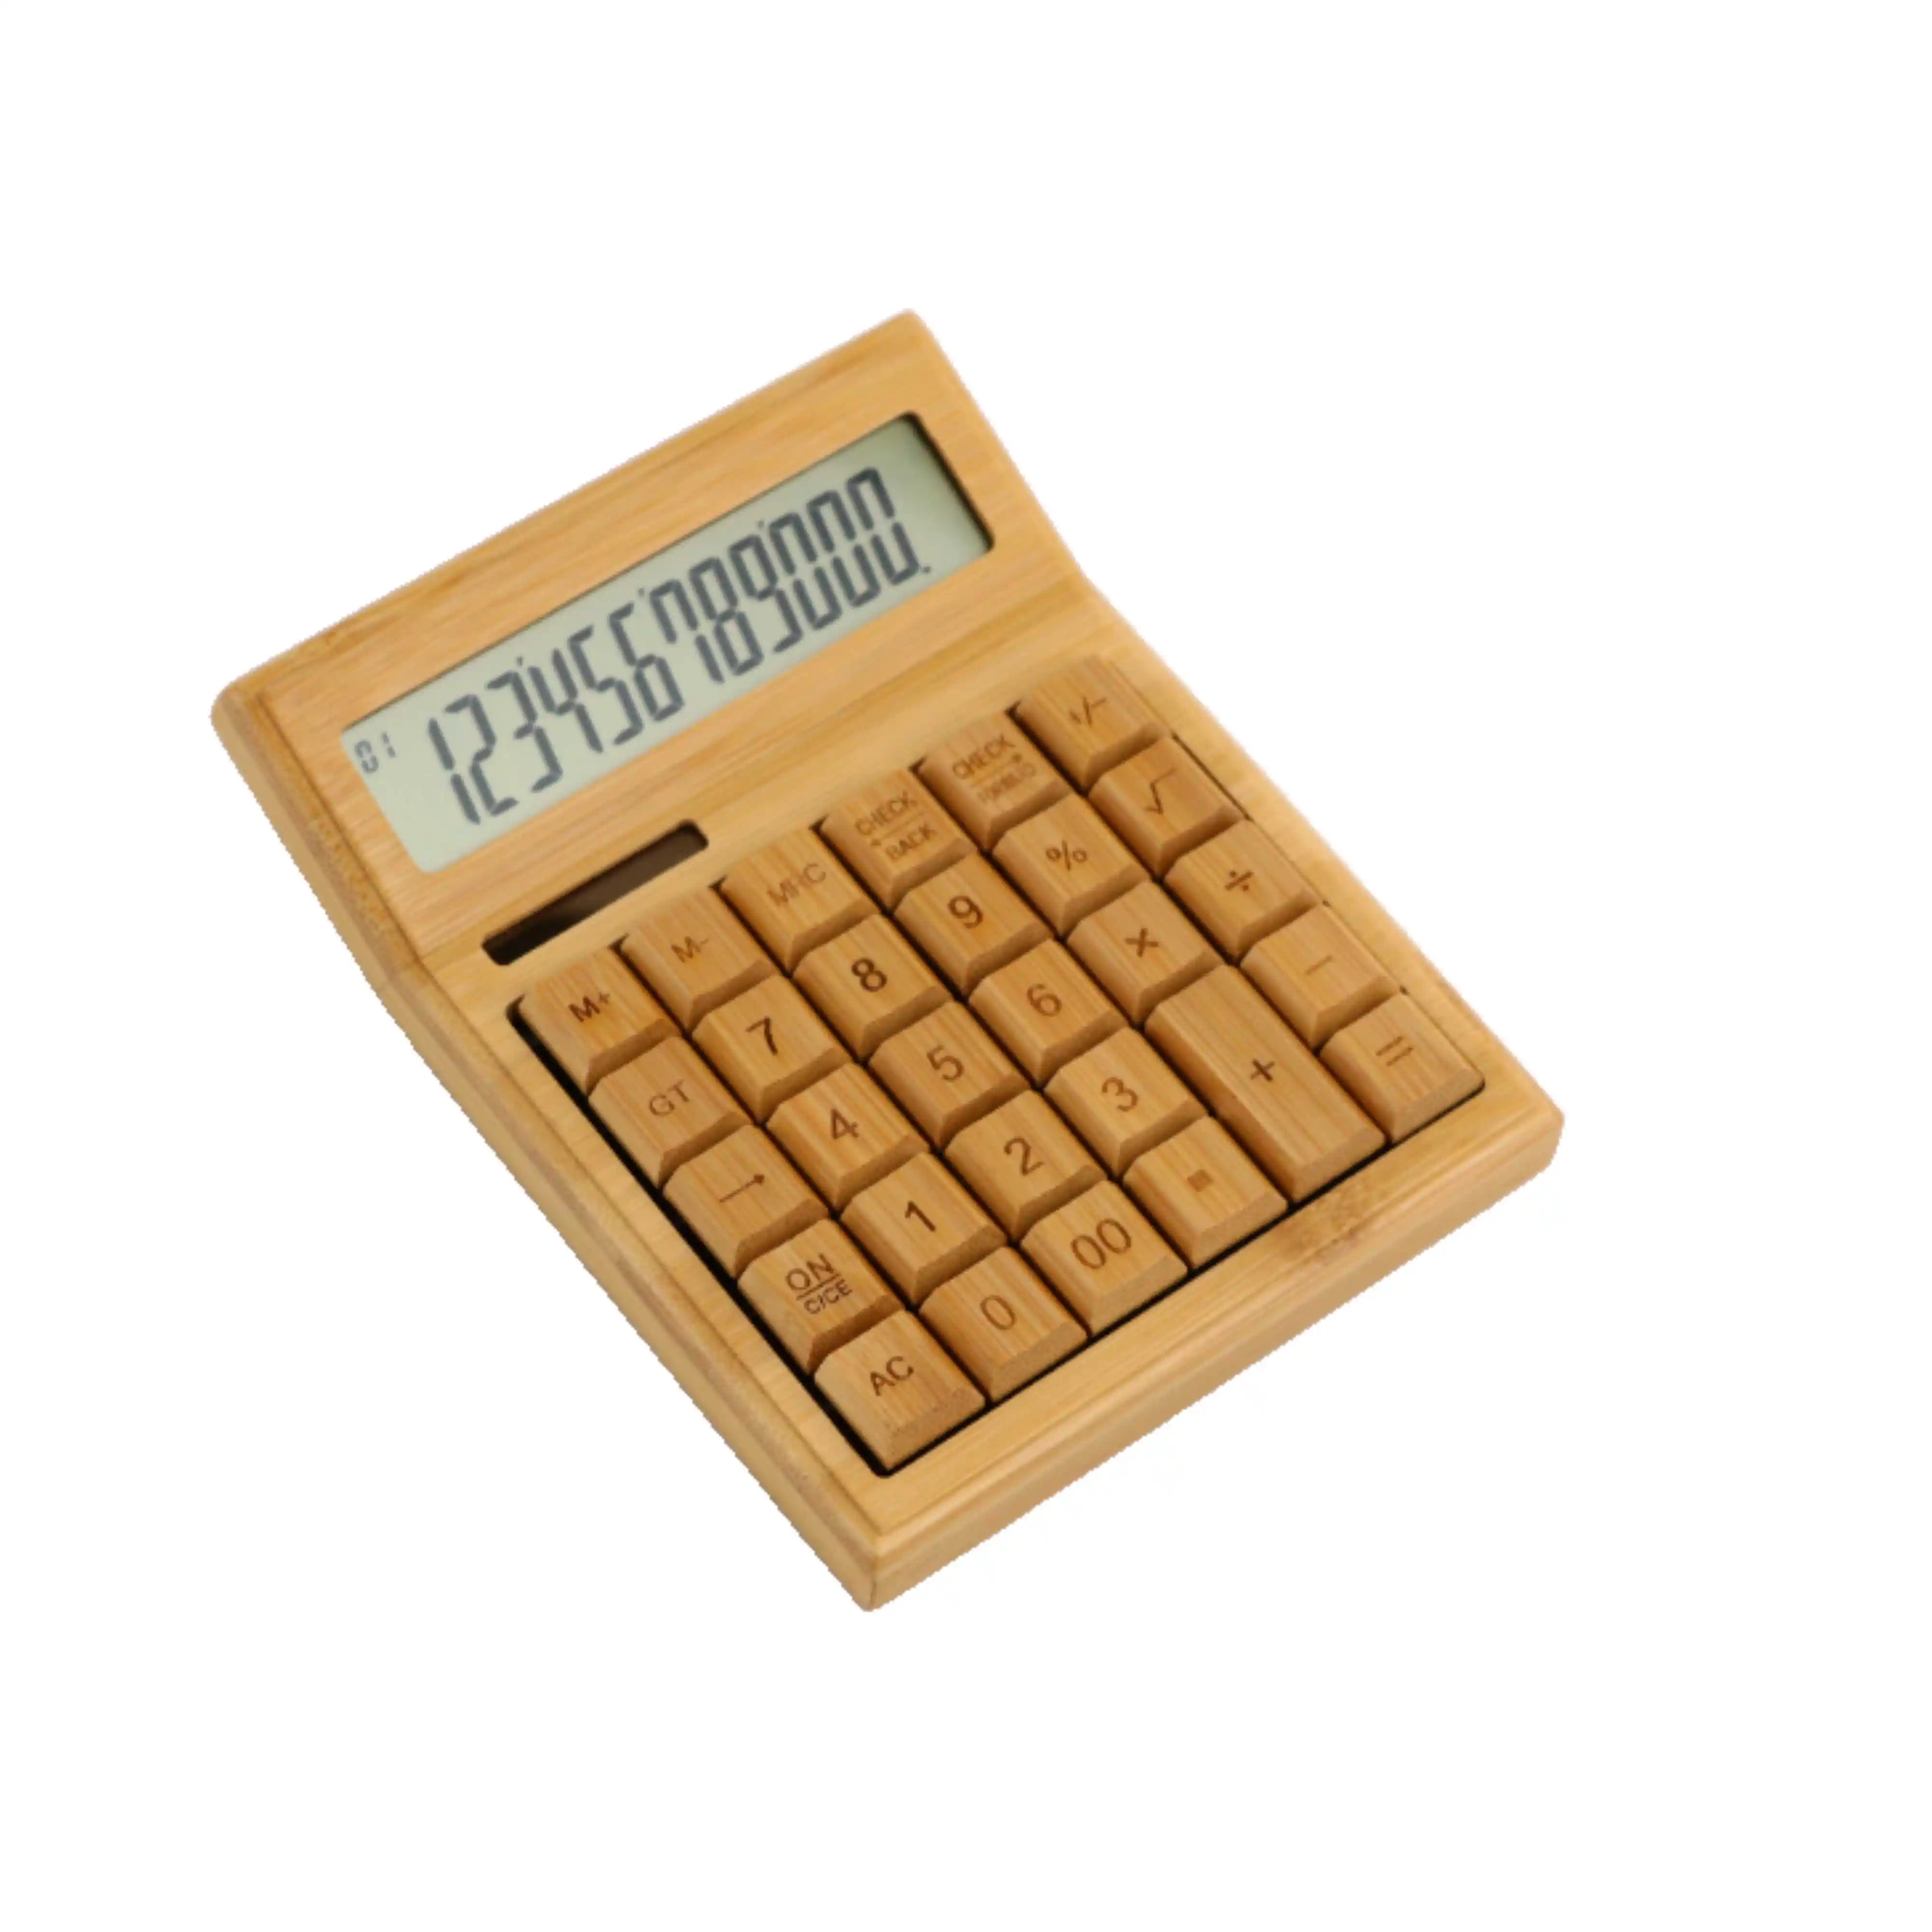 Personalizar pequeno desktop bonito madeira calculadora científica Solar Power bambu calculadoras eletrônicas com 12 dígitos